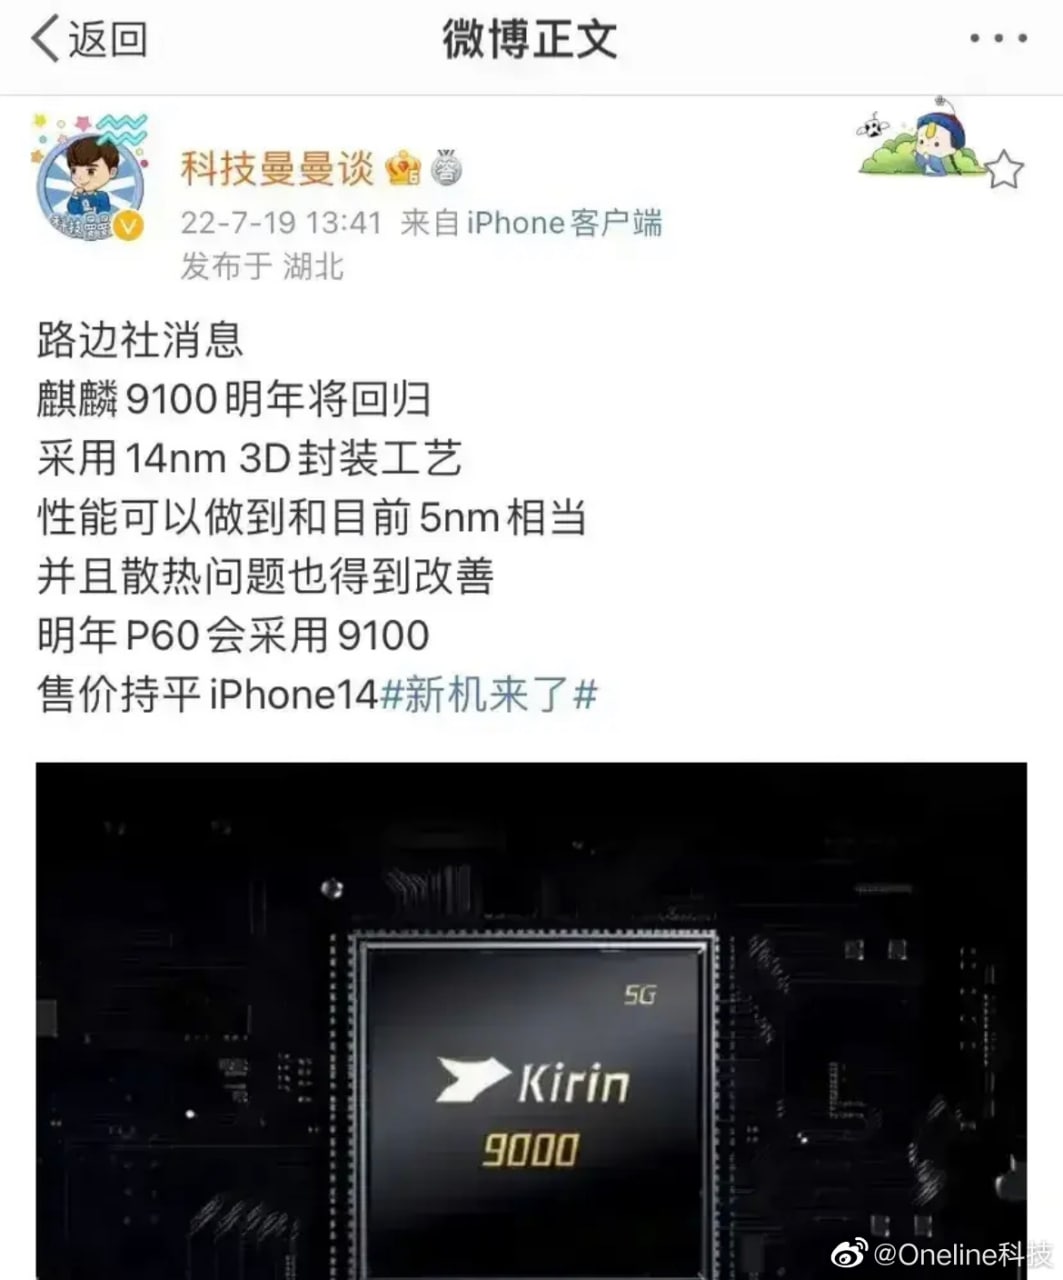 Huawei P60 to feature 14nm Kirin 9100: Rumor